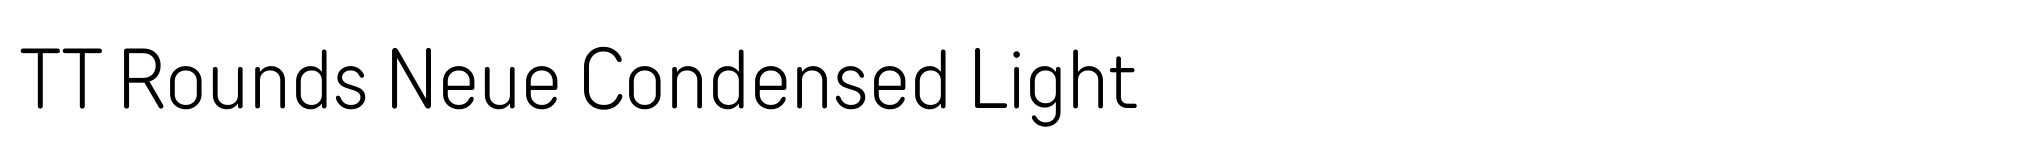 TT Rounds Neue Condensed Light image